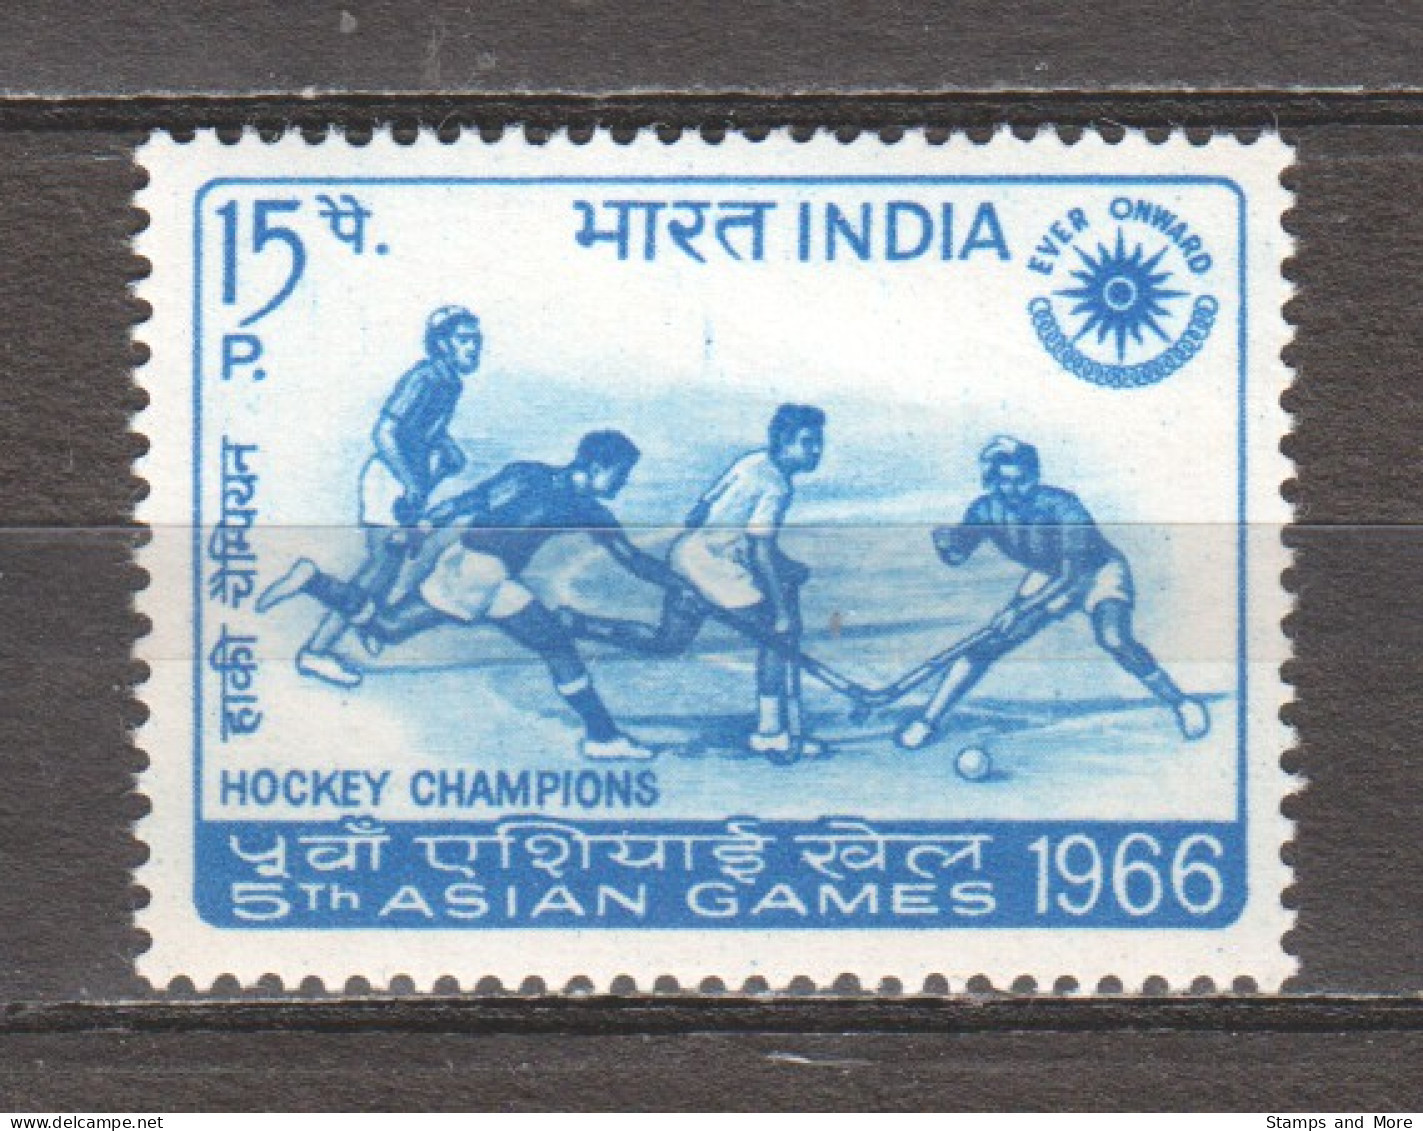 India 1966 Mi 420 MNH ASIAN GAMES - FIELD HOCKEY - Hockey (Veld)